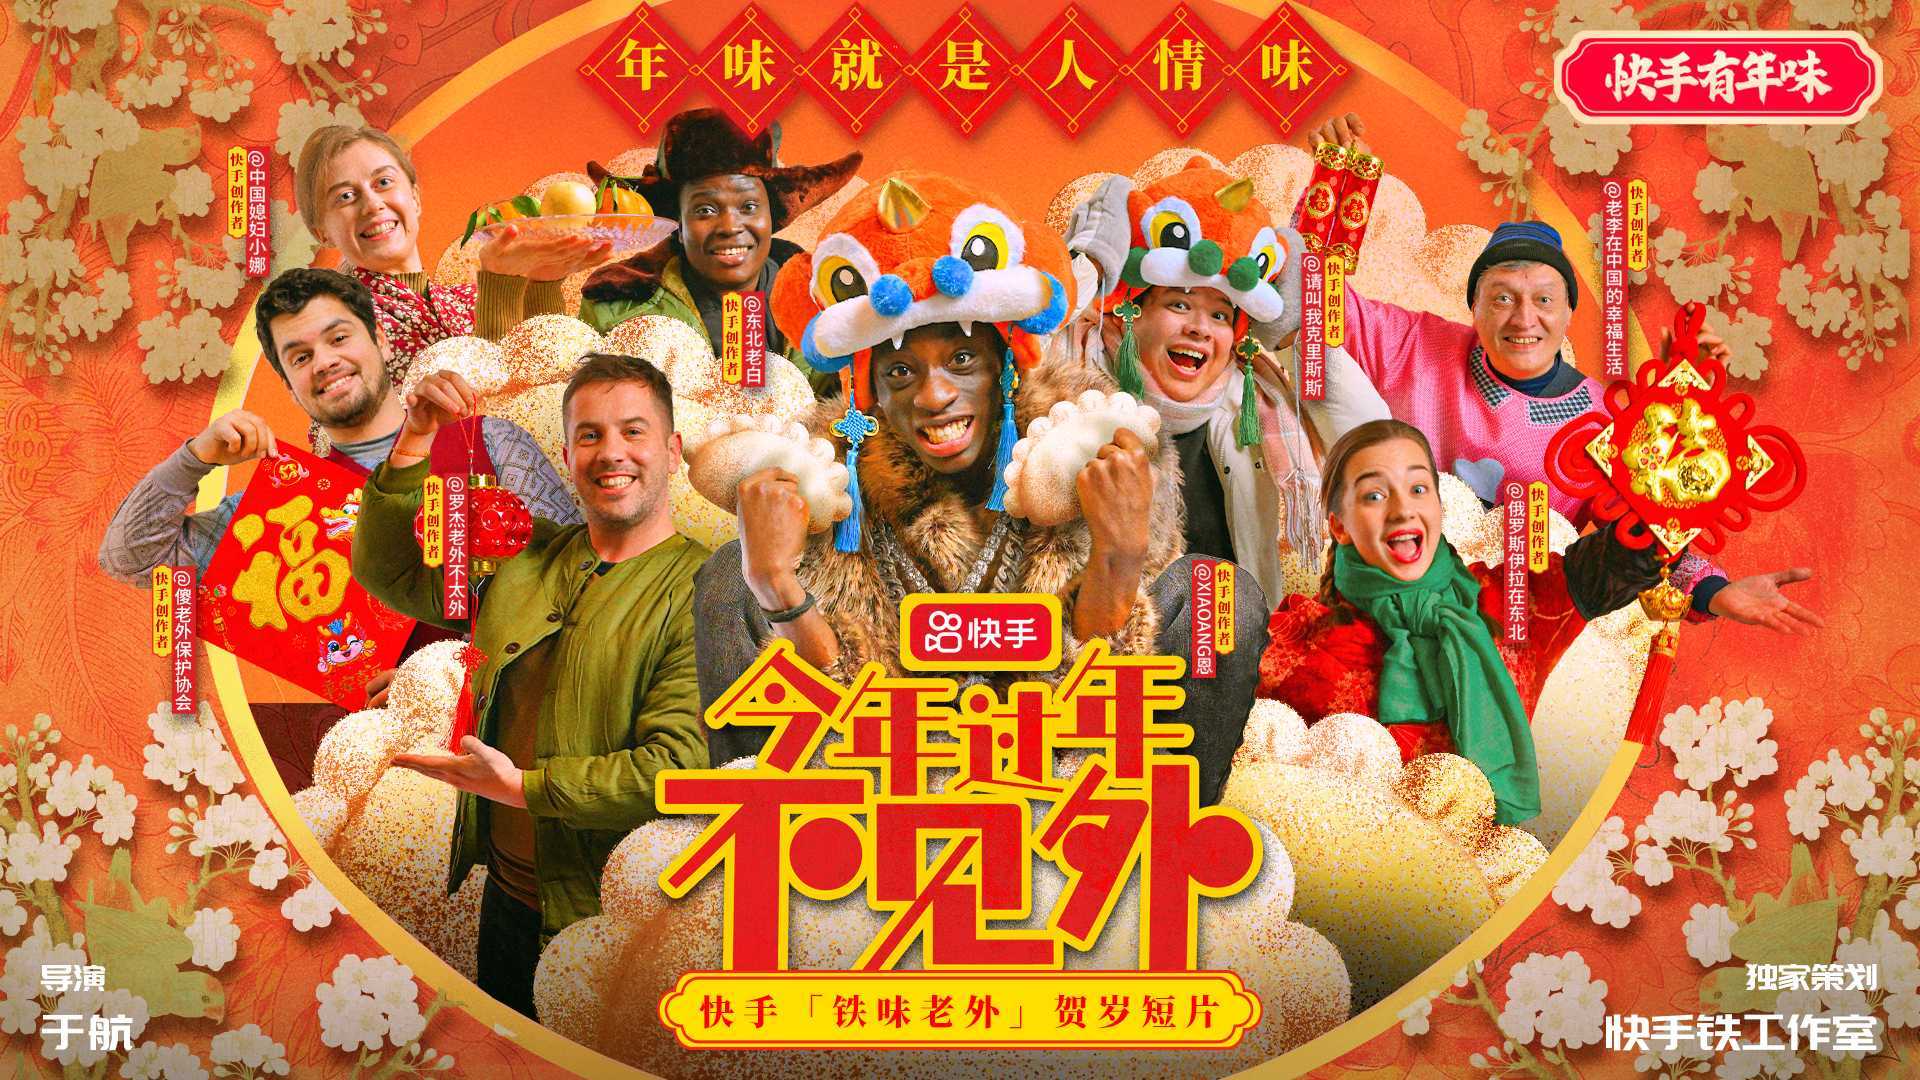 快手铁味老外贺岁短片《今年过年不见外》：一群外国人演绎中国年味故事